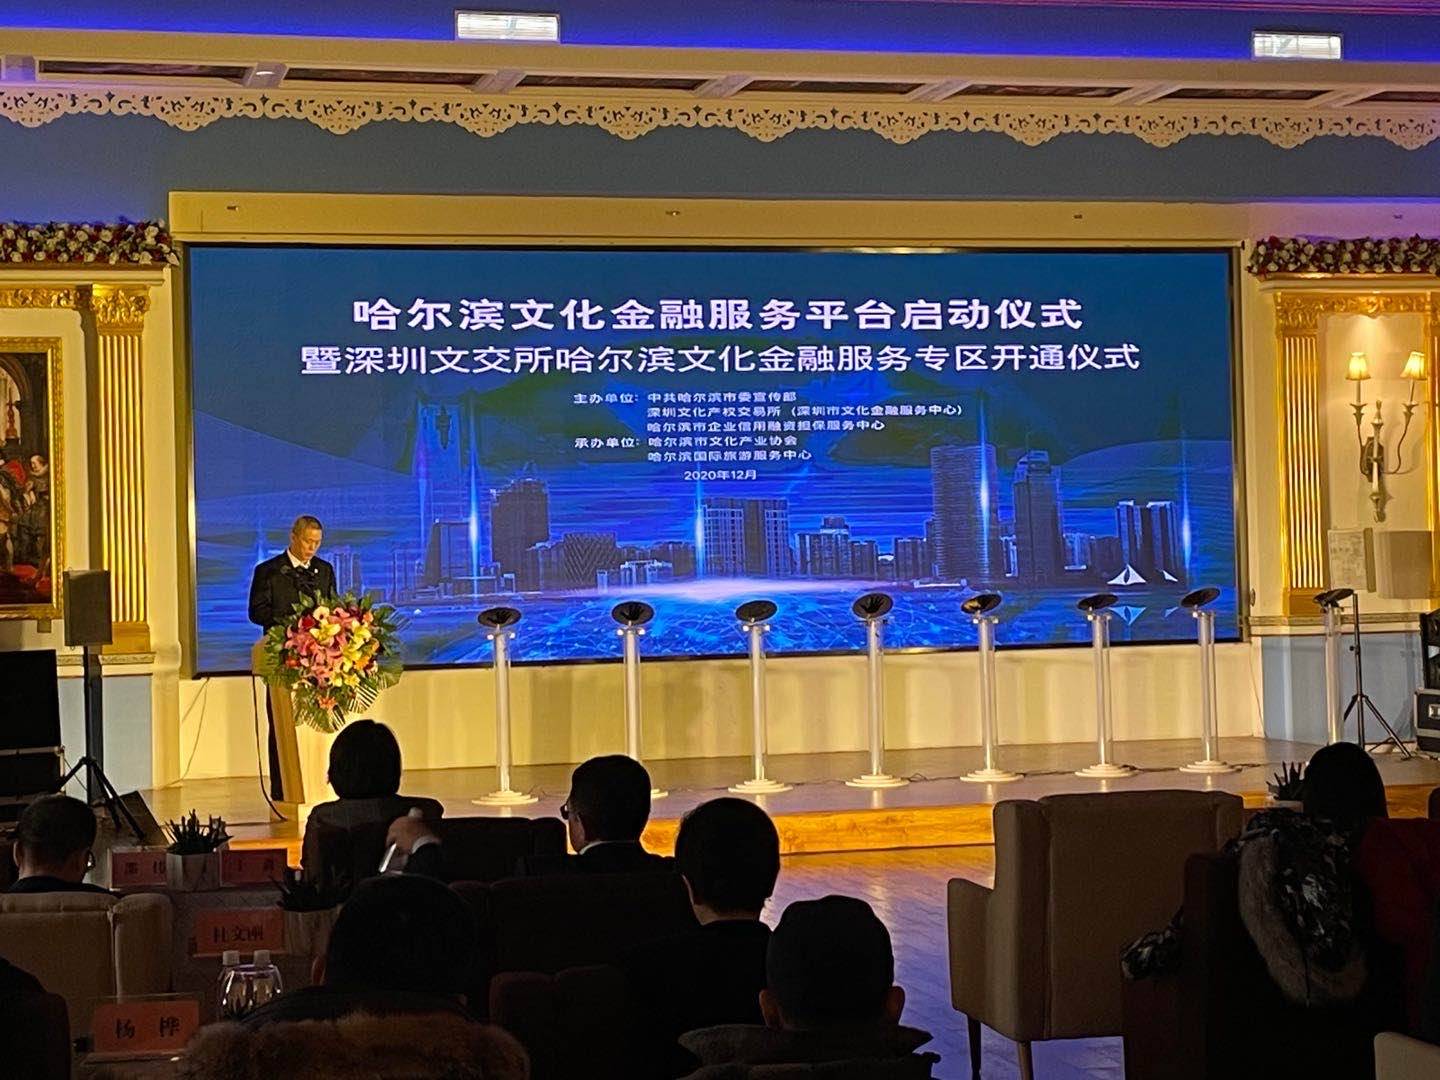 深哈两地合作哈尔滨文化金融服务平台启动